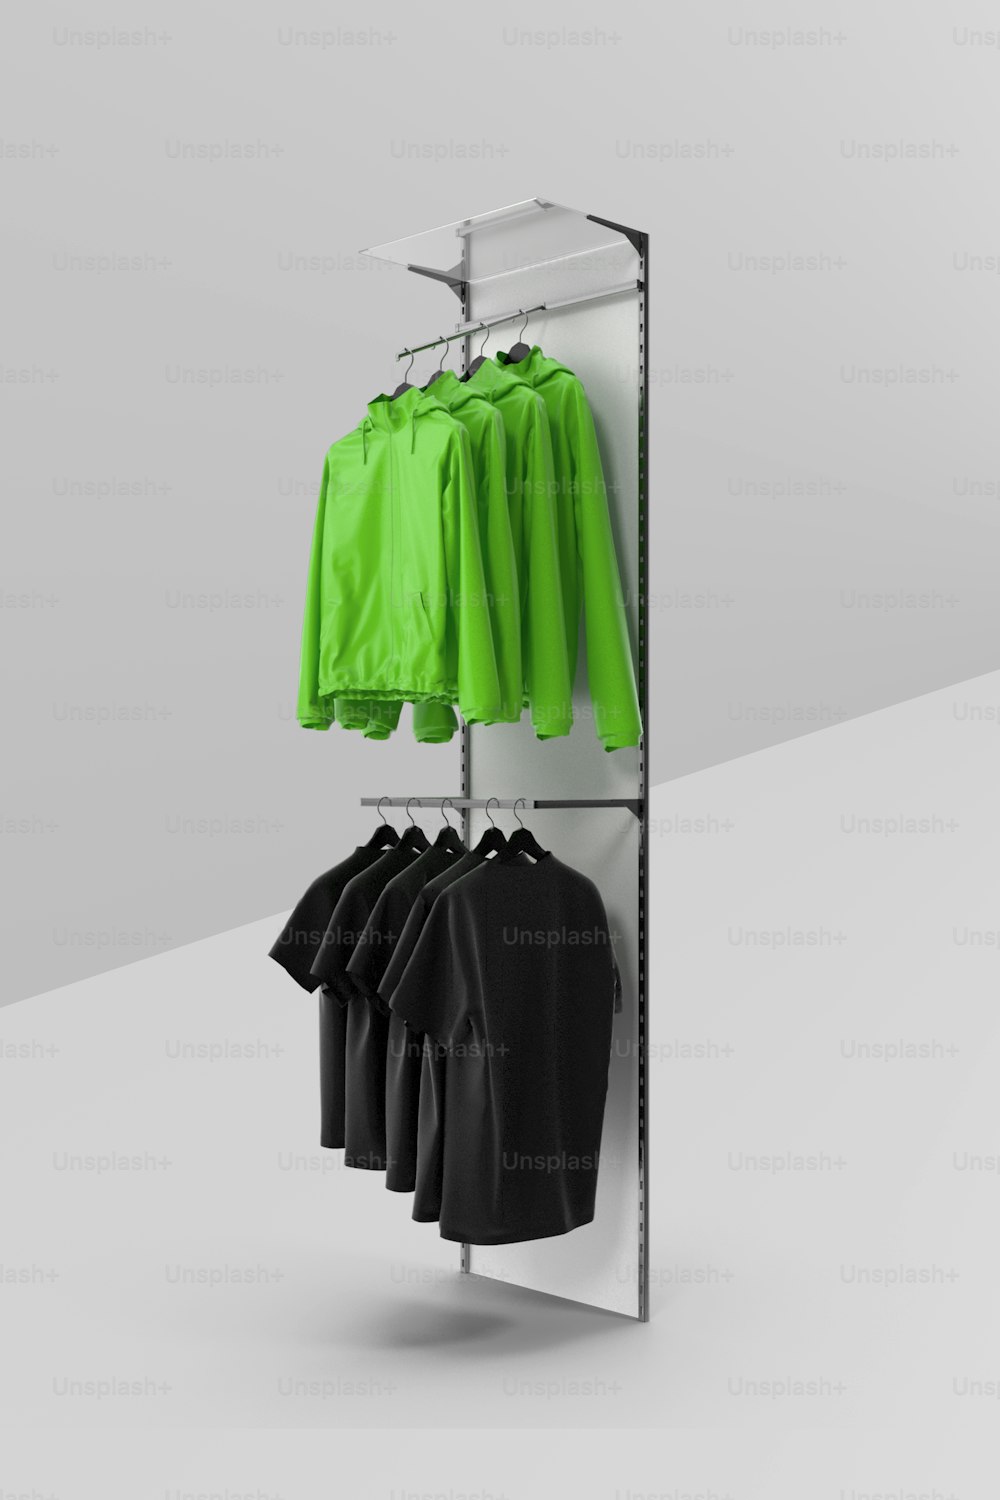 un porte-vêtements avec des chemises vertes et noires